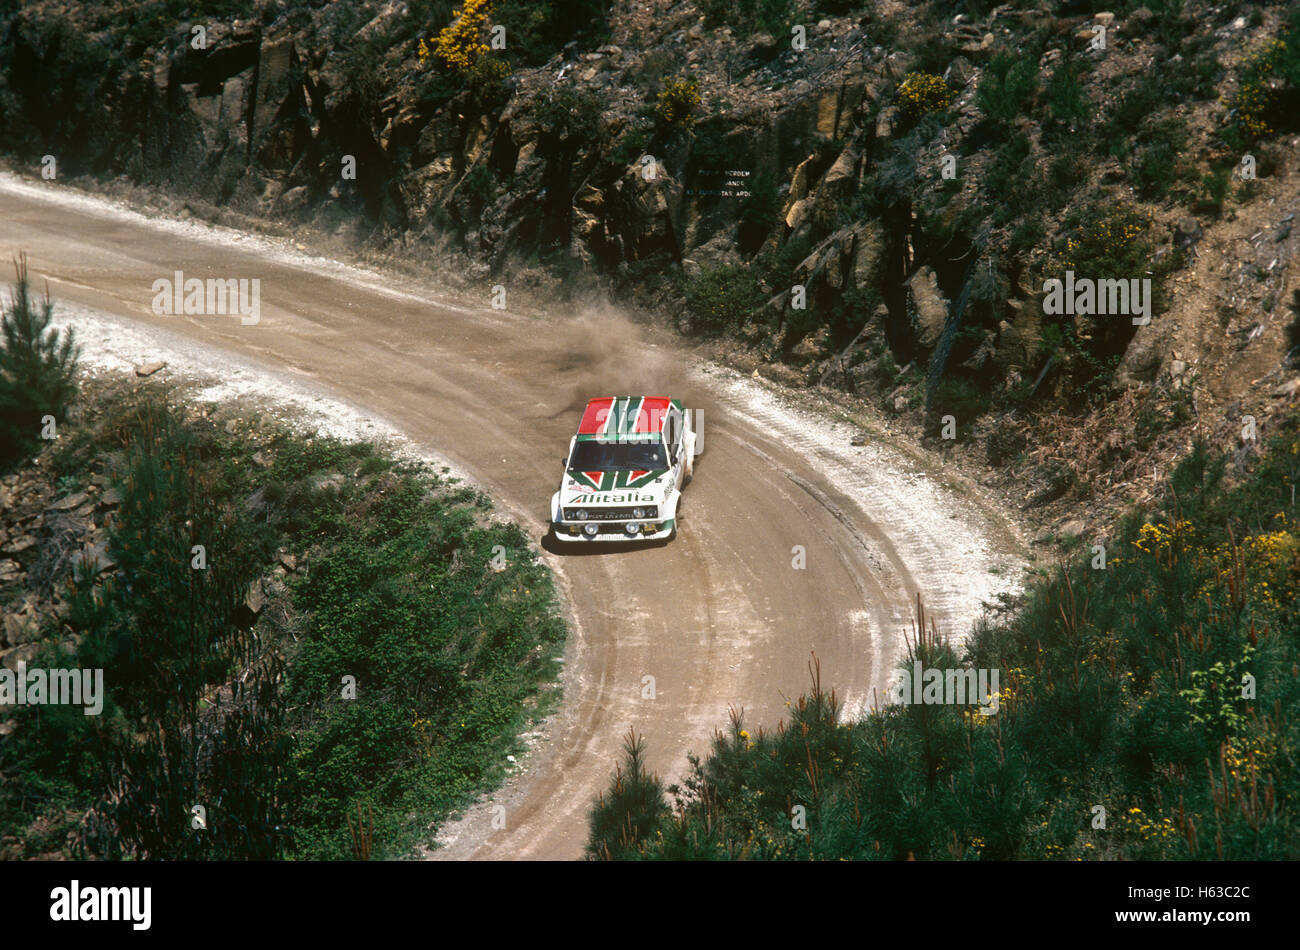 Fiat rally car 1980s Stock Photo